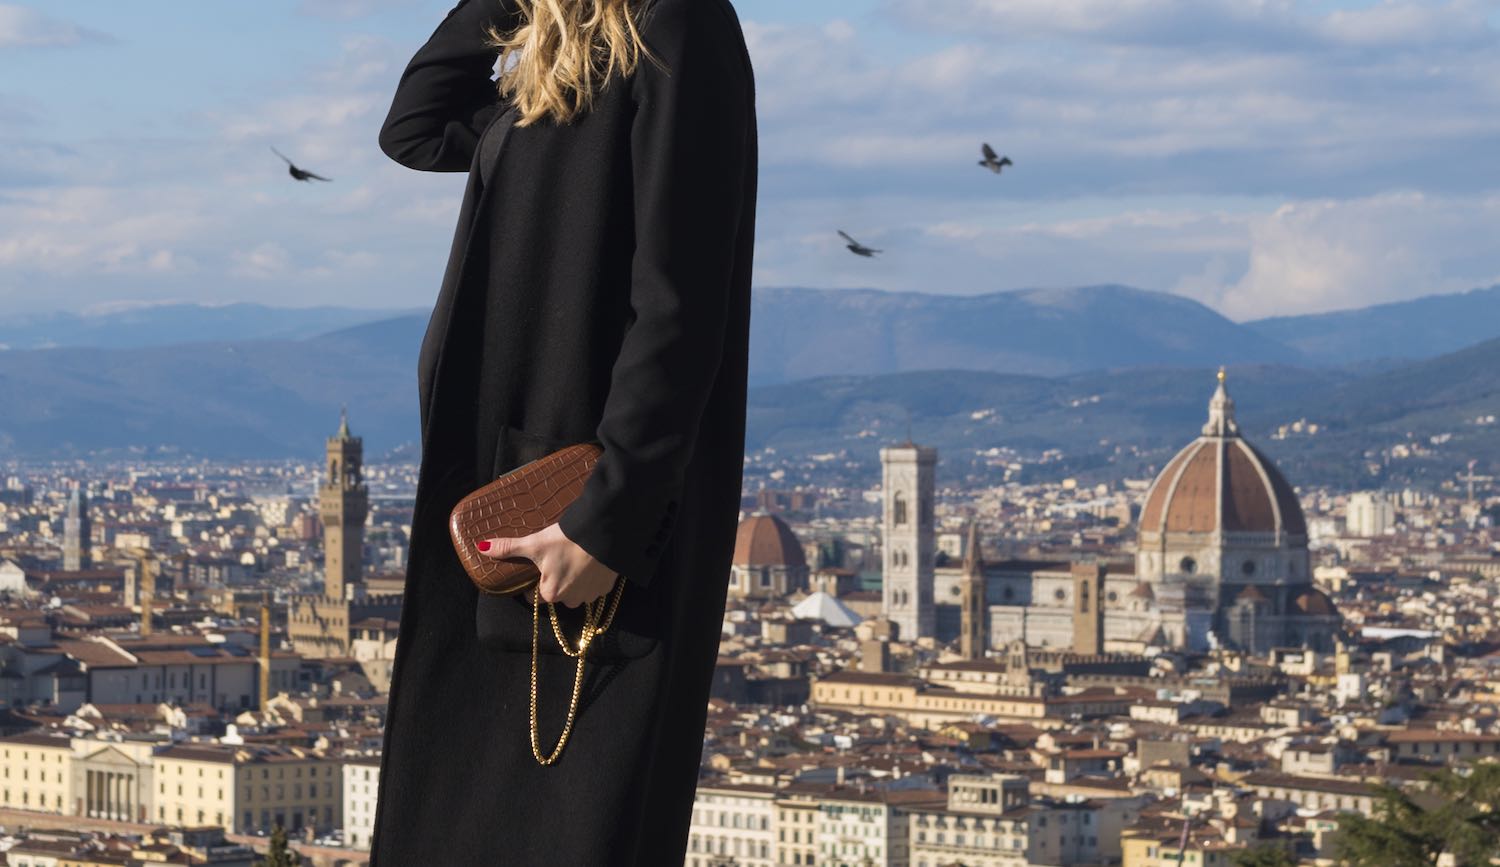 Ellipse è la nuova collezione firmata Olimpia bags, il nuovo brand toscano di borse di design, nata dalla fantasia di Olimpia Gozzini